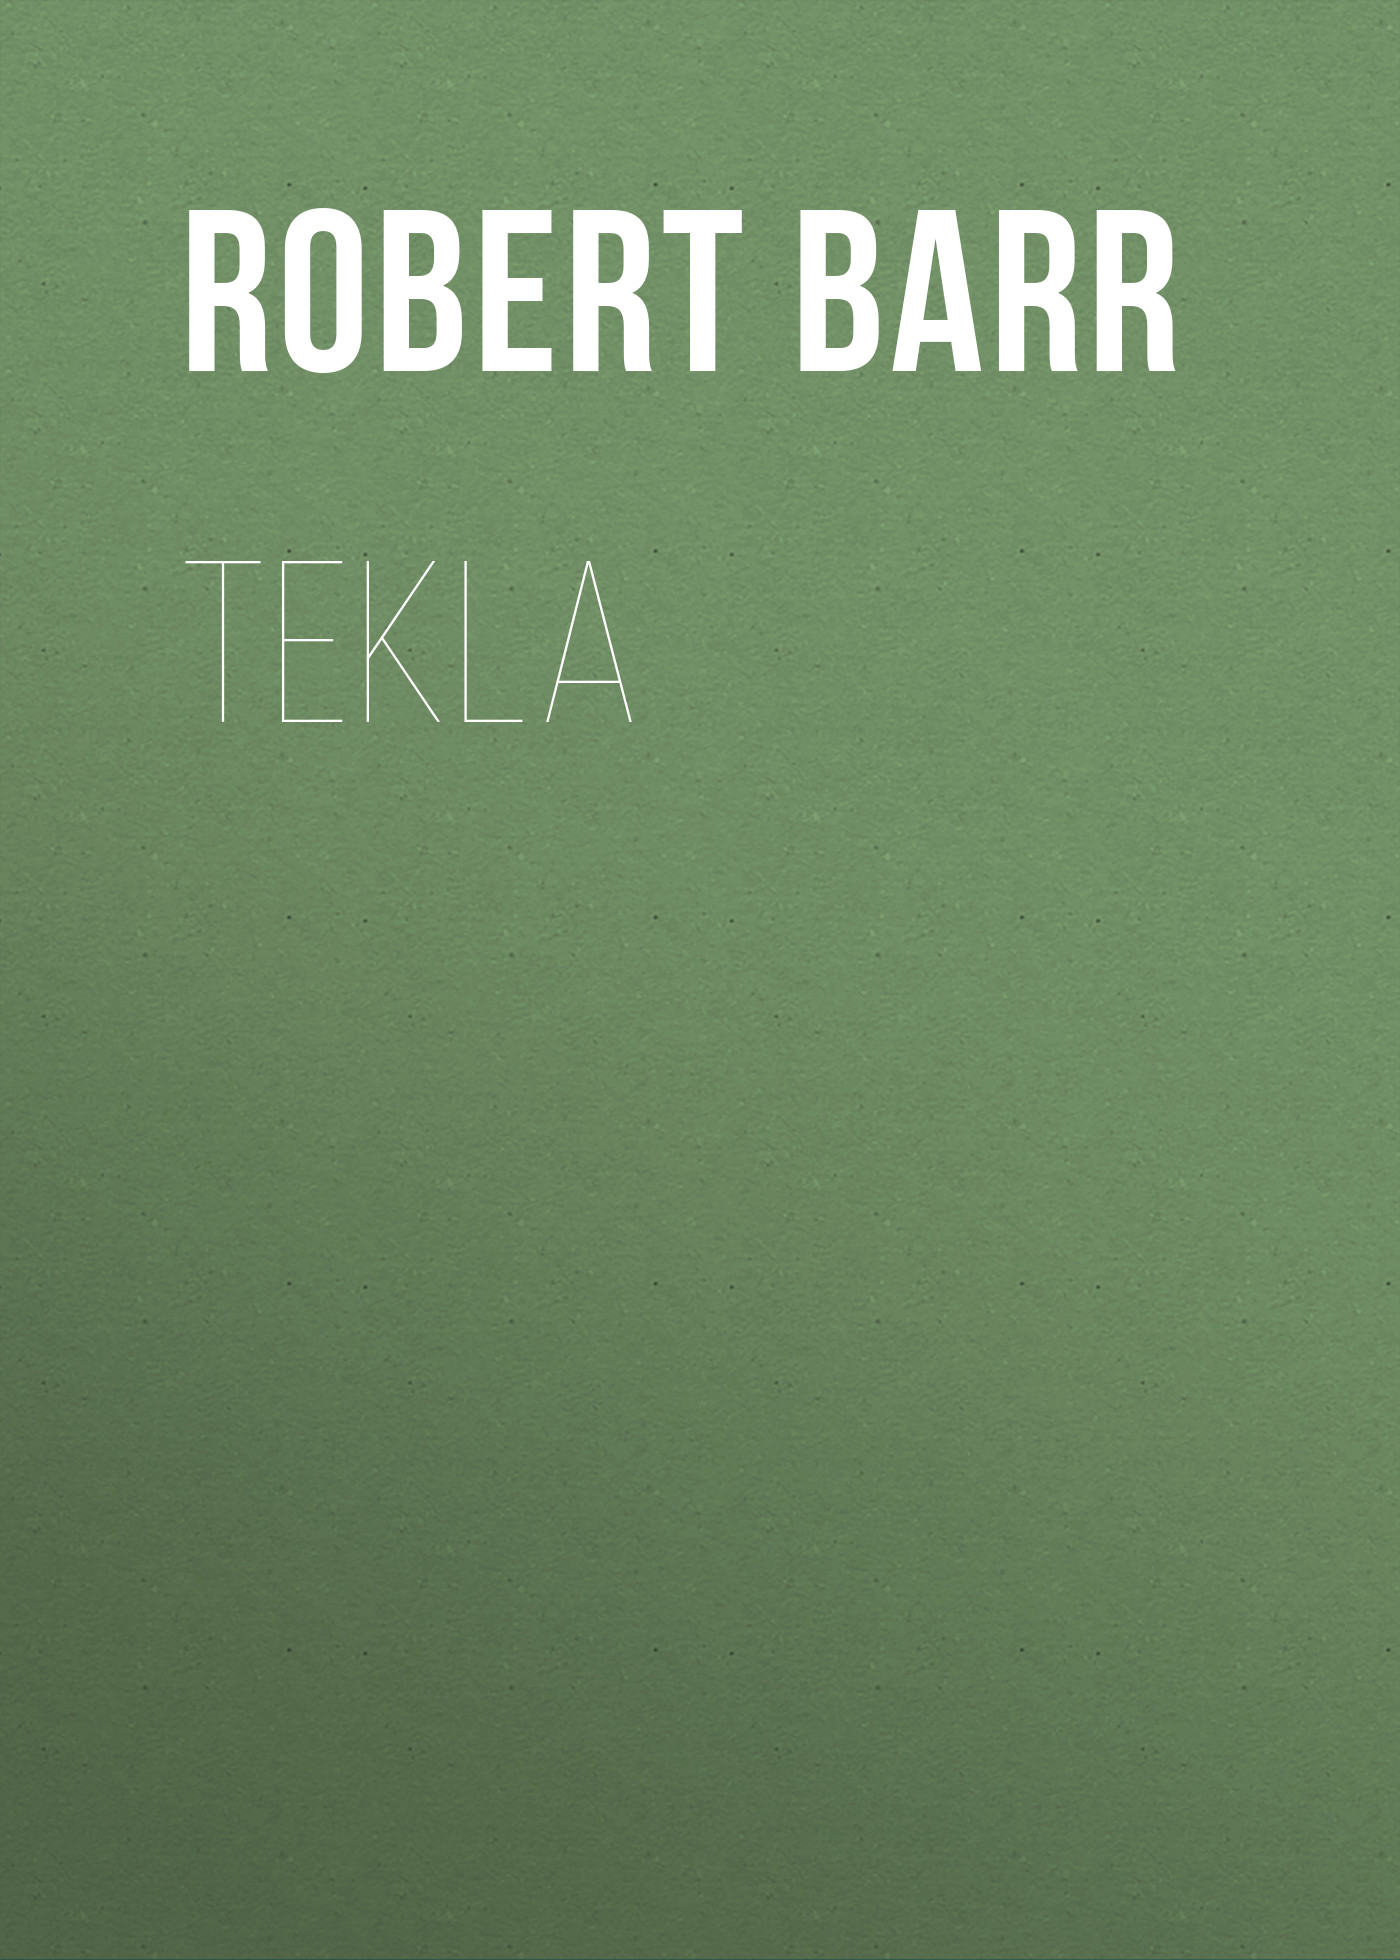 Книга Tekla из серии , созданная Robert Barr, может относится к жанру Иностранные языки, Зарубежная классика. Стоимость электронной книги Tekla с идентификатором 23161643 составляет 5.99 руб.